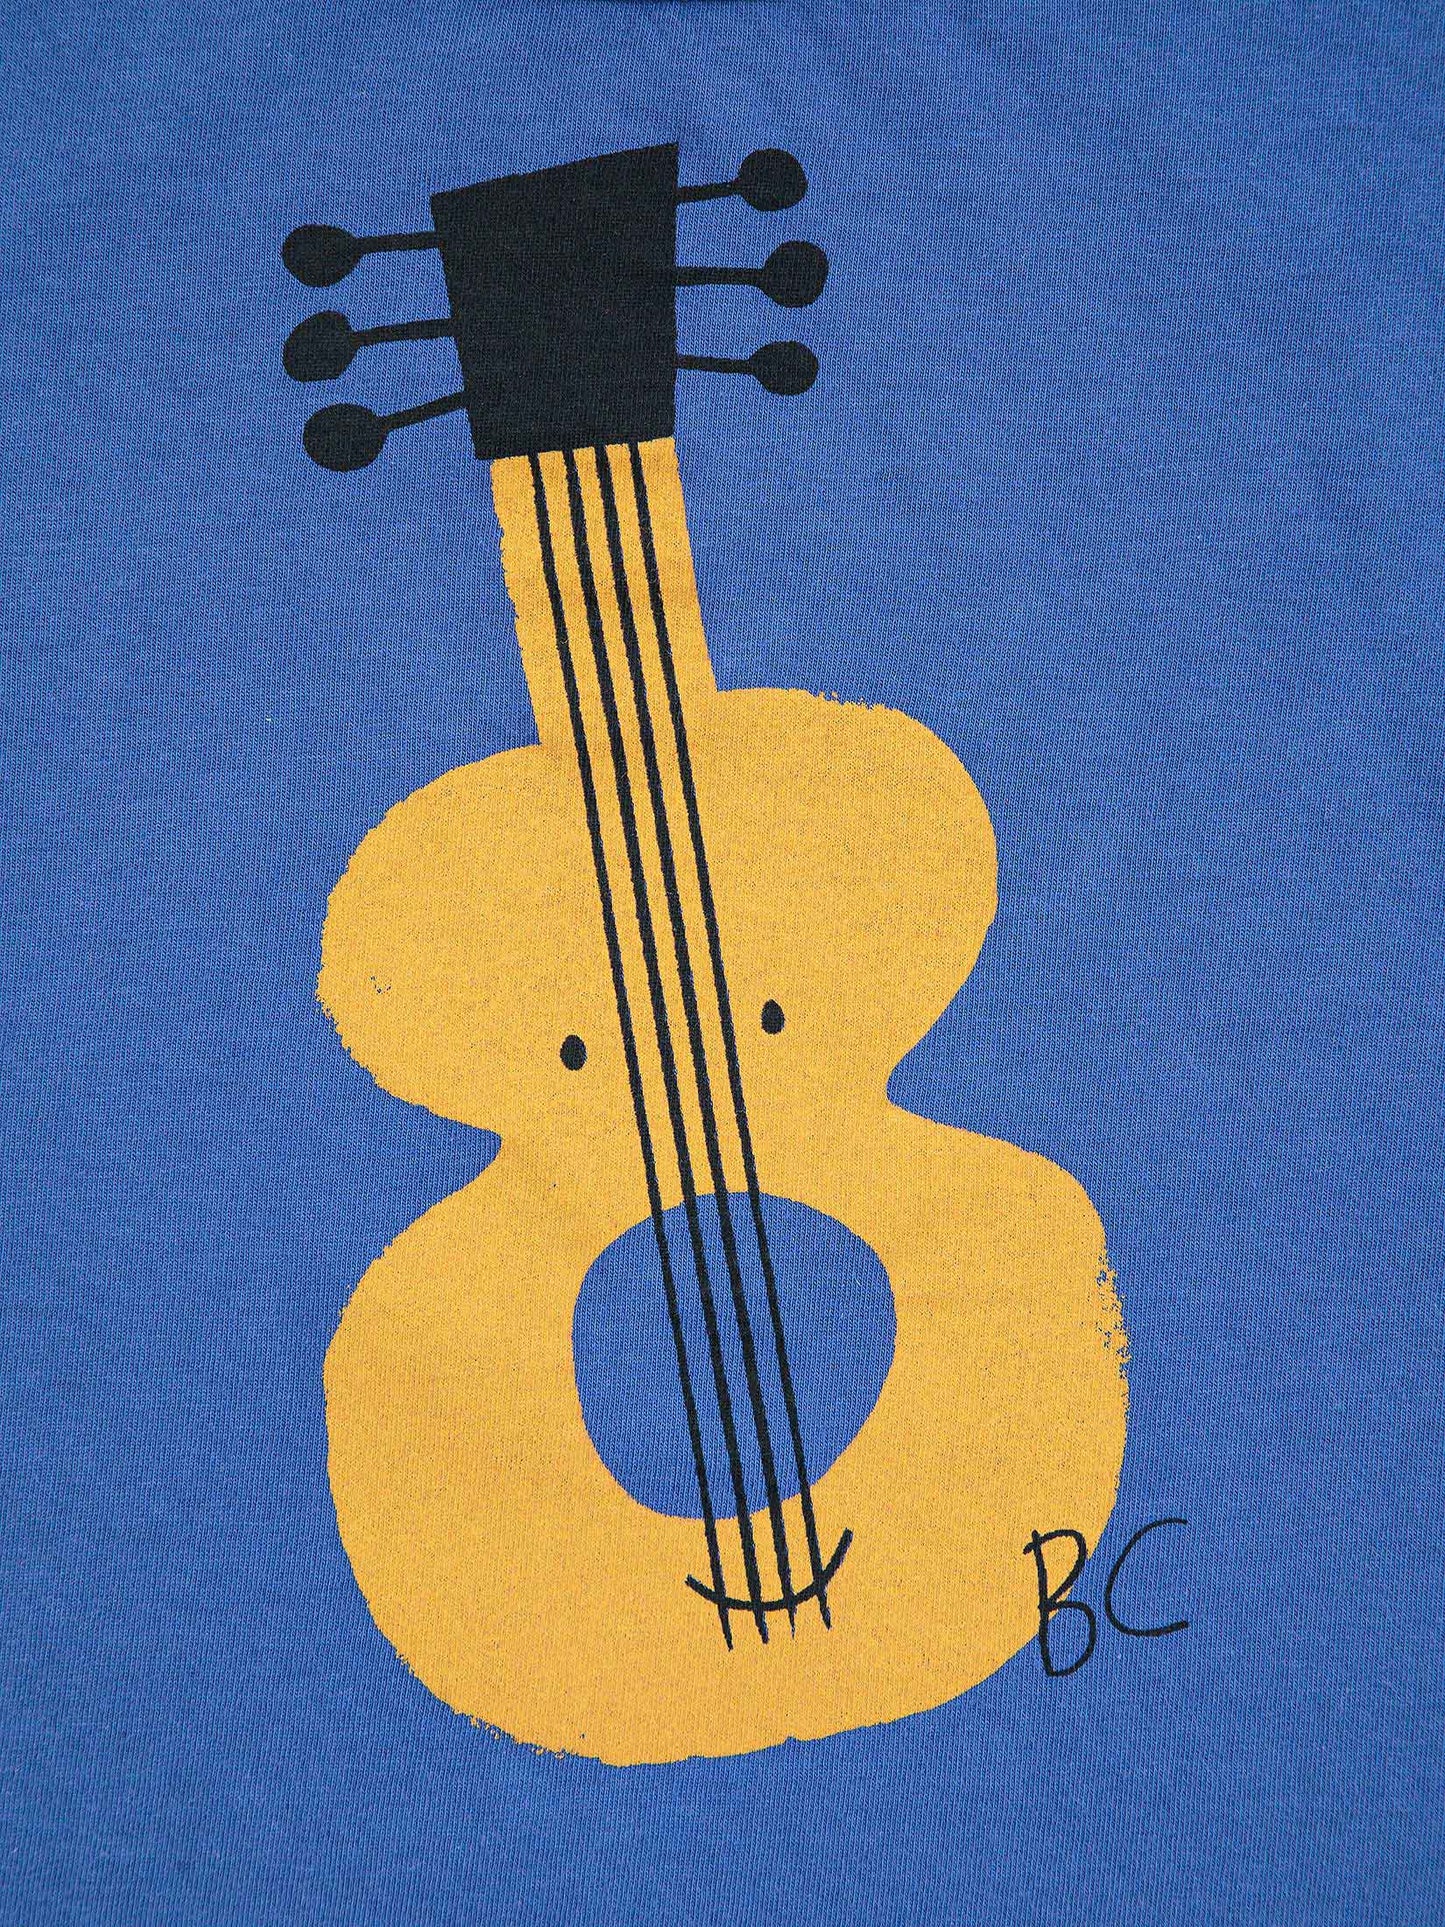 Camiseta guitarra acústica